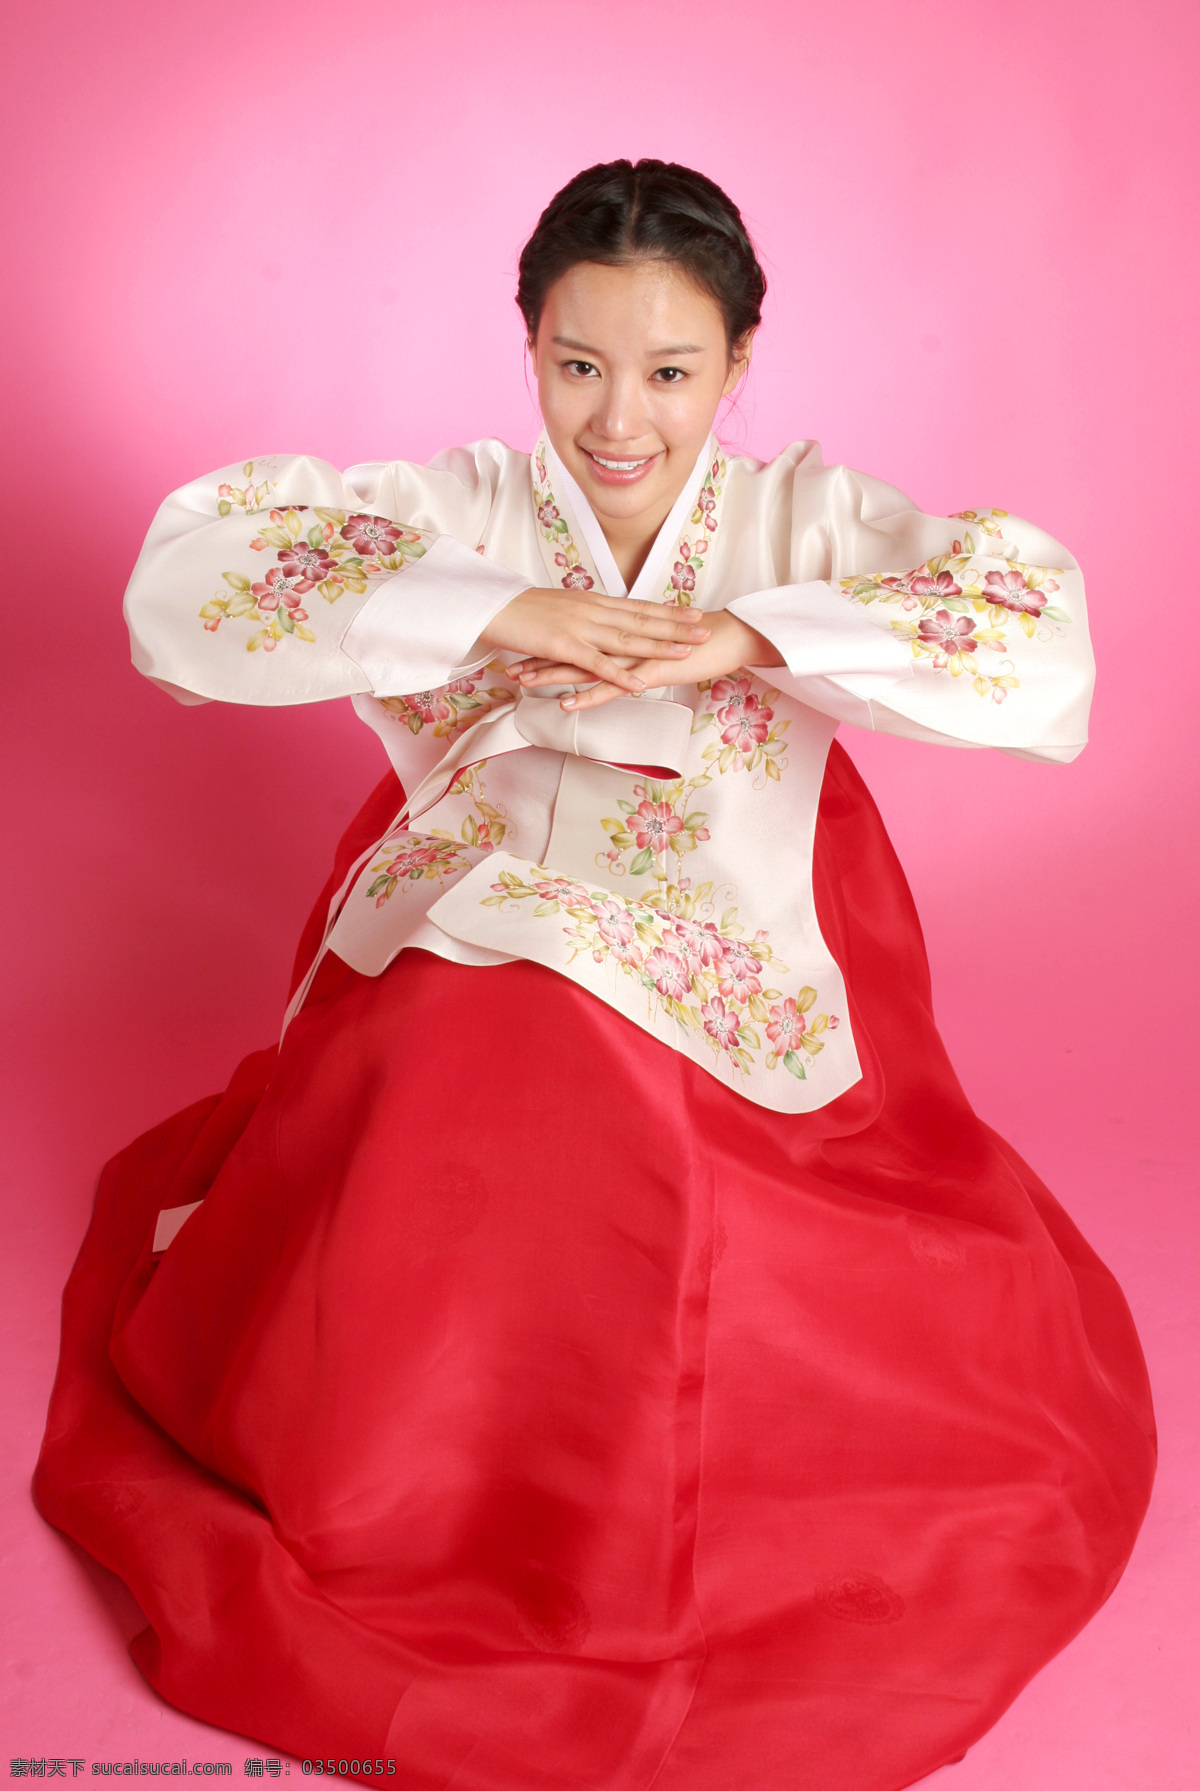 韩国 美女模特 明星偶像 美女明星 时尚美女 美女写真 朝鲜美女 明星图片 人物图片